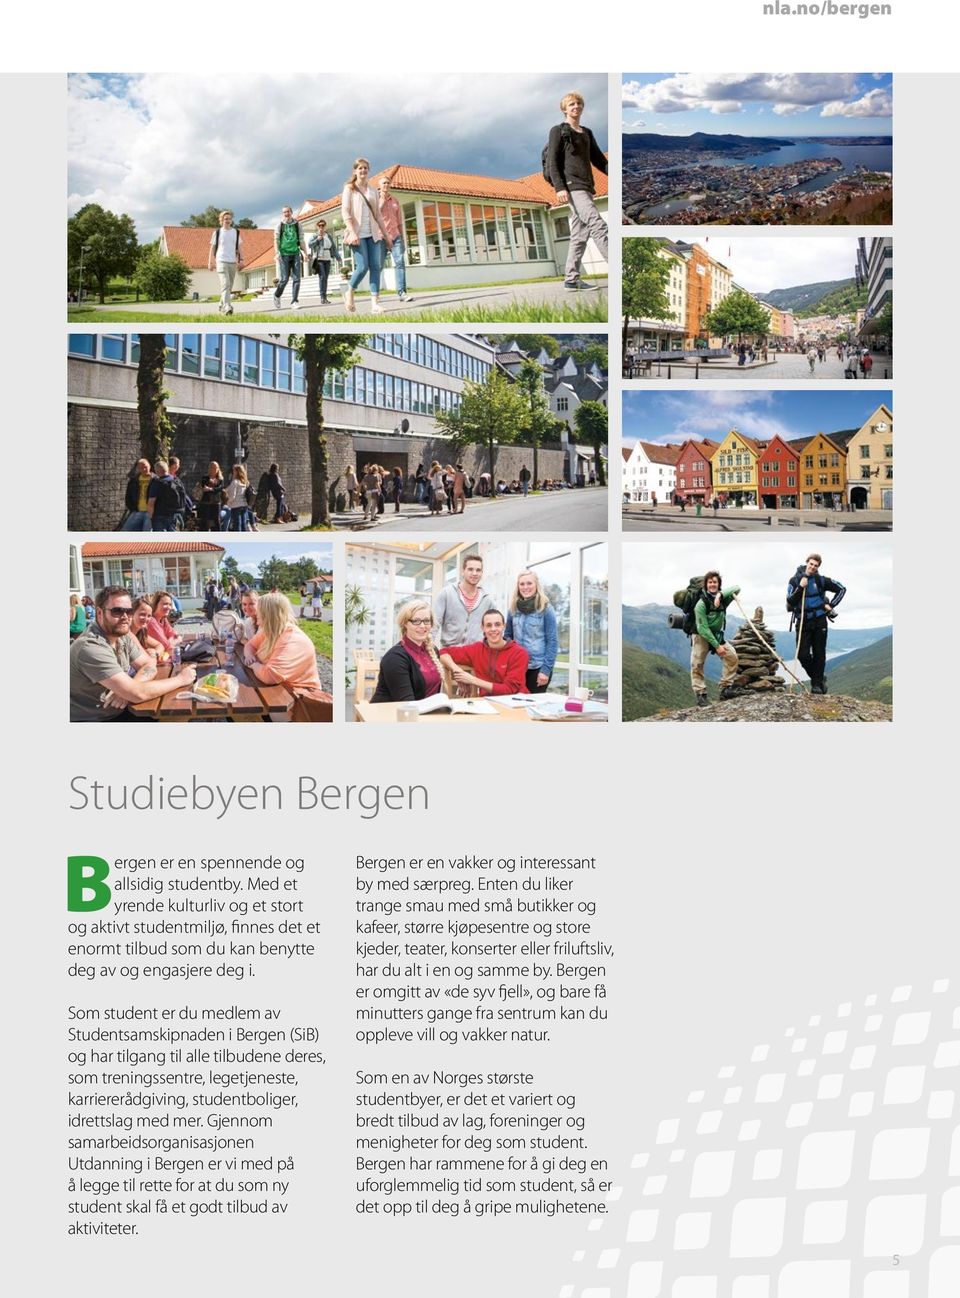 Som student er du medlem av Studentsamskipnaden i Bergen (SiB) og har tilgang til alle tilbudene deres, som treningssentre, legetjeneste, karriererådgiving, studentboliger, idrettslag med mer.